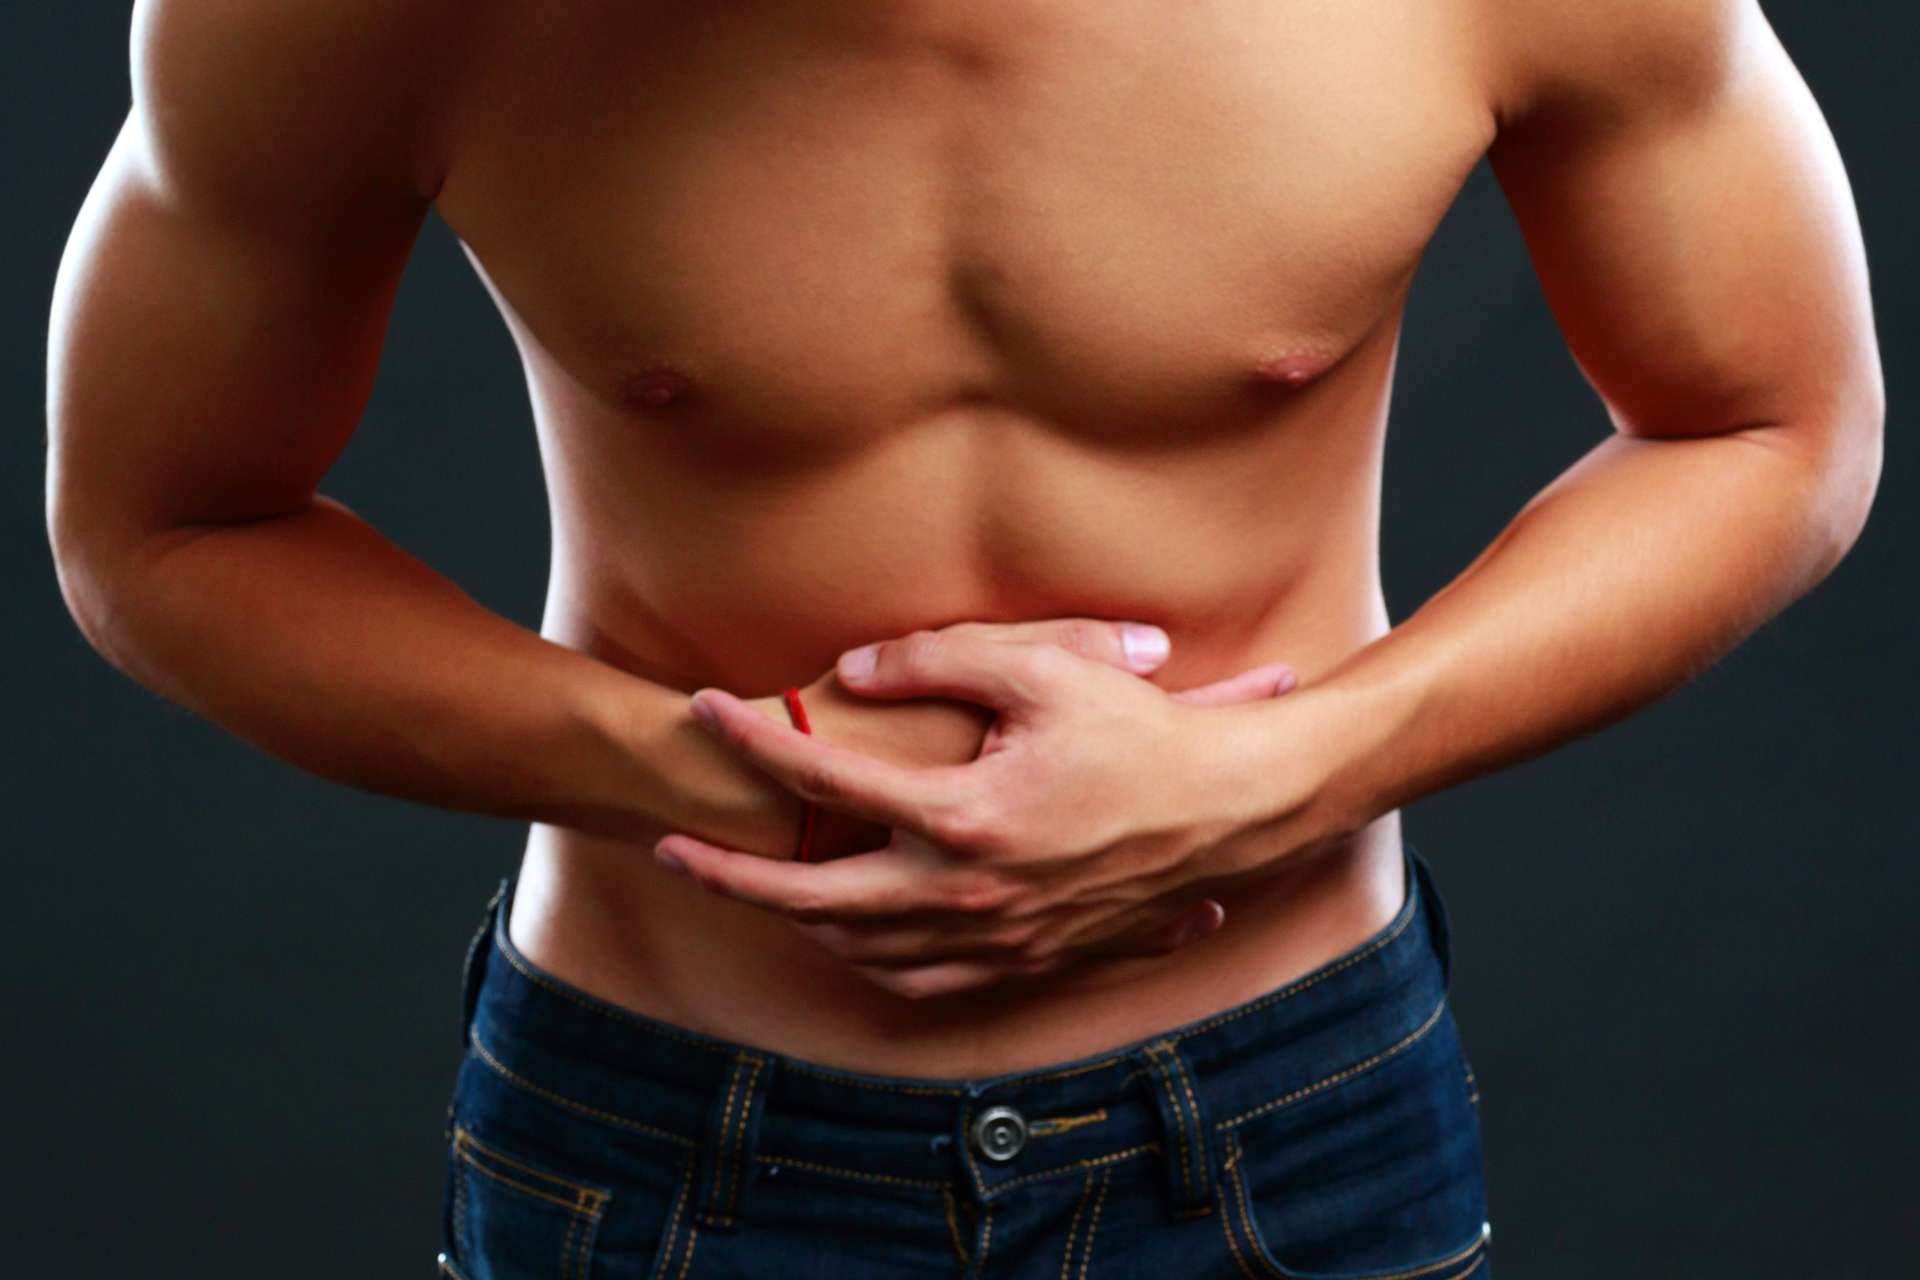 l'aria nello stomaco sopra certi limiti può causare turbolenze intestinali